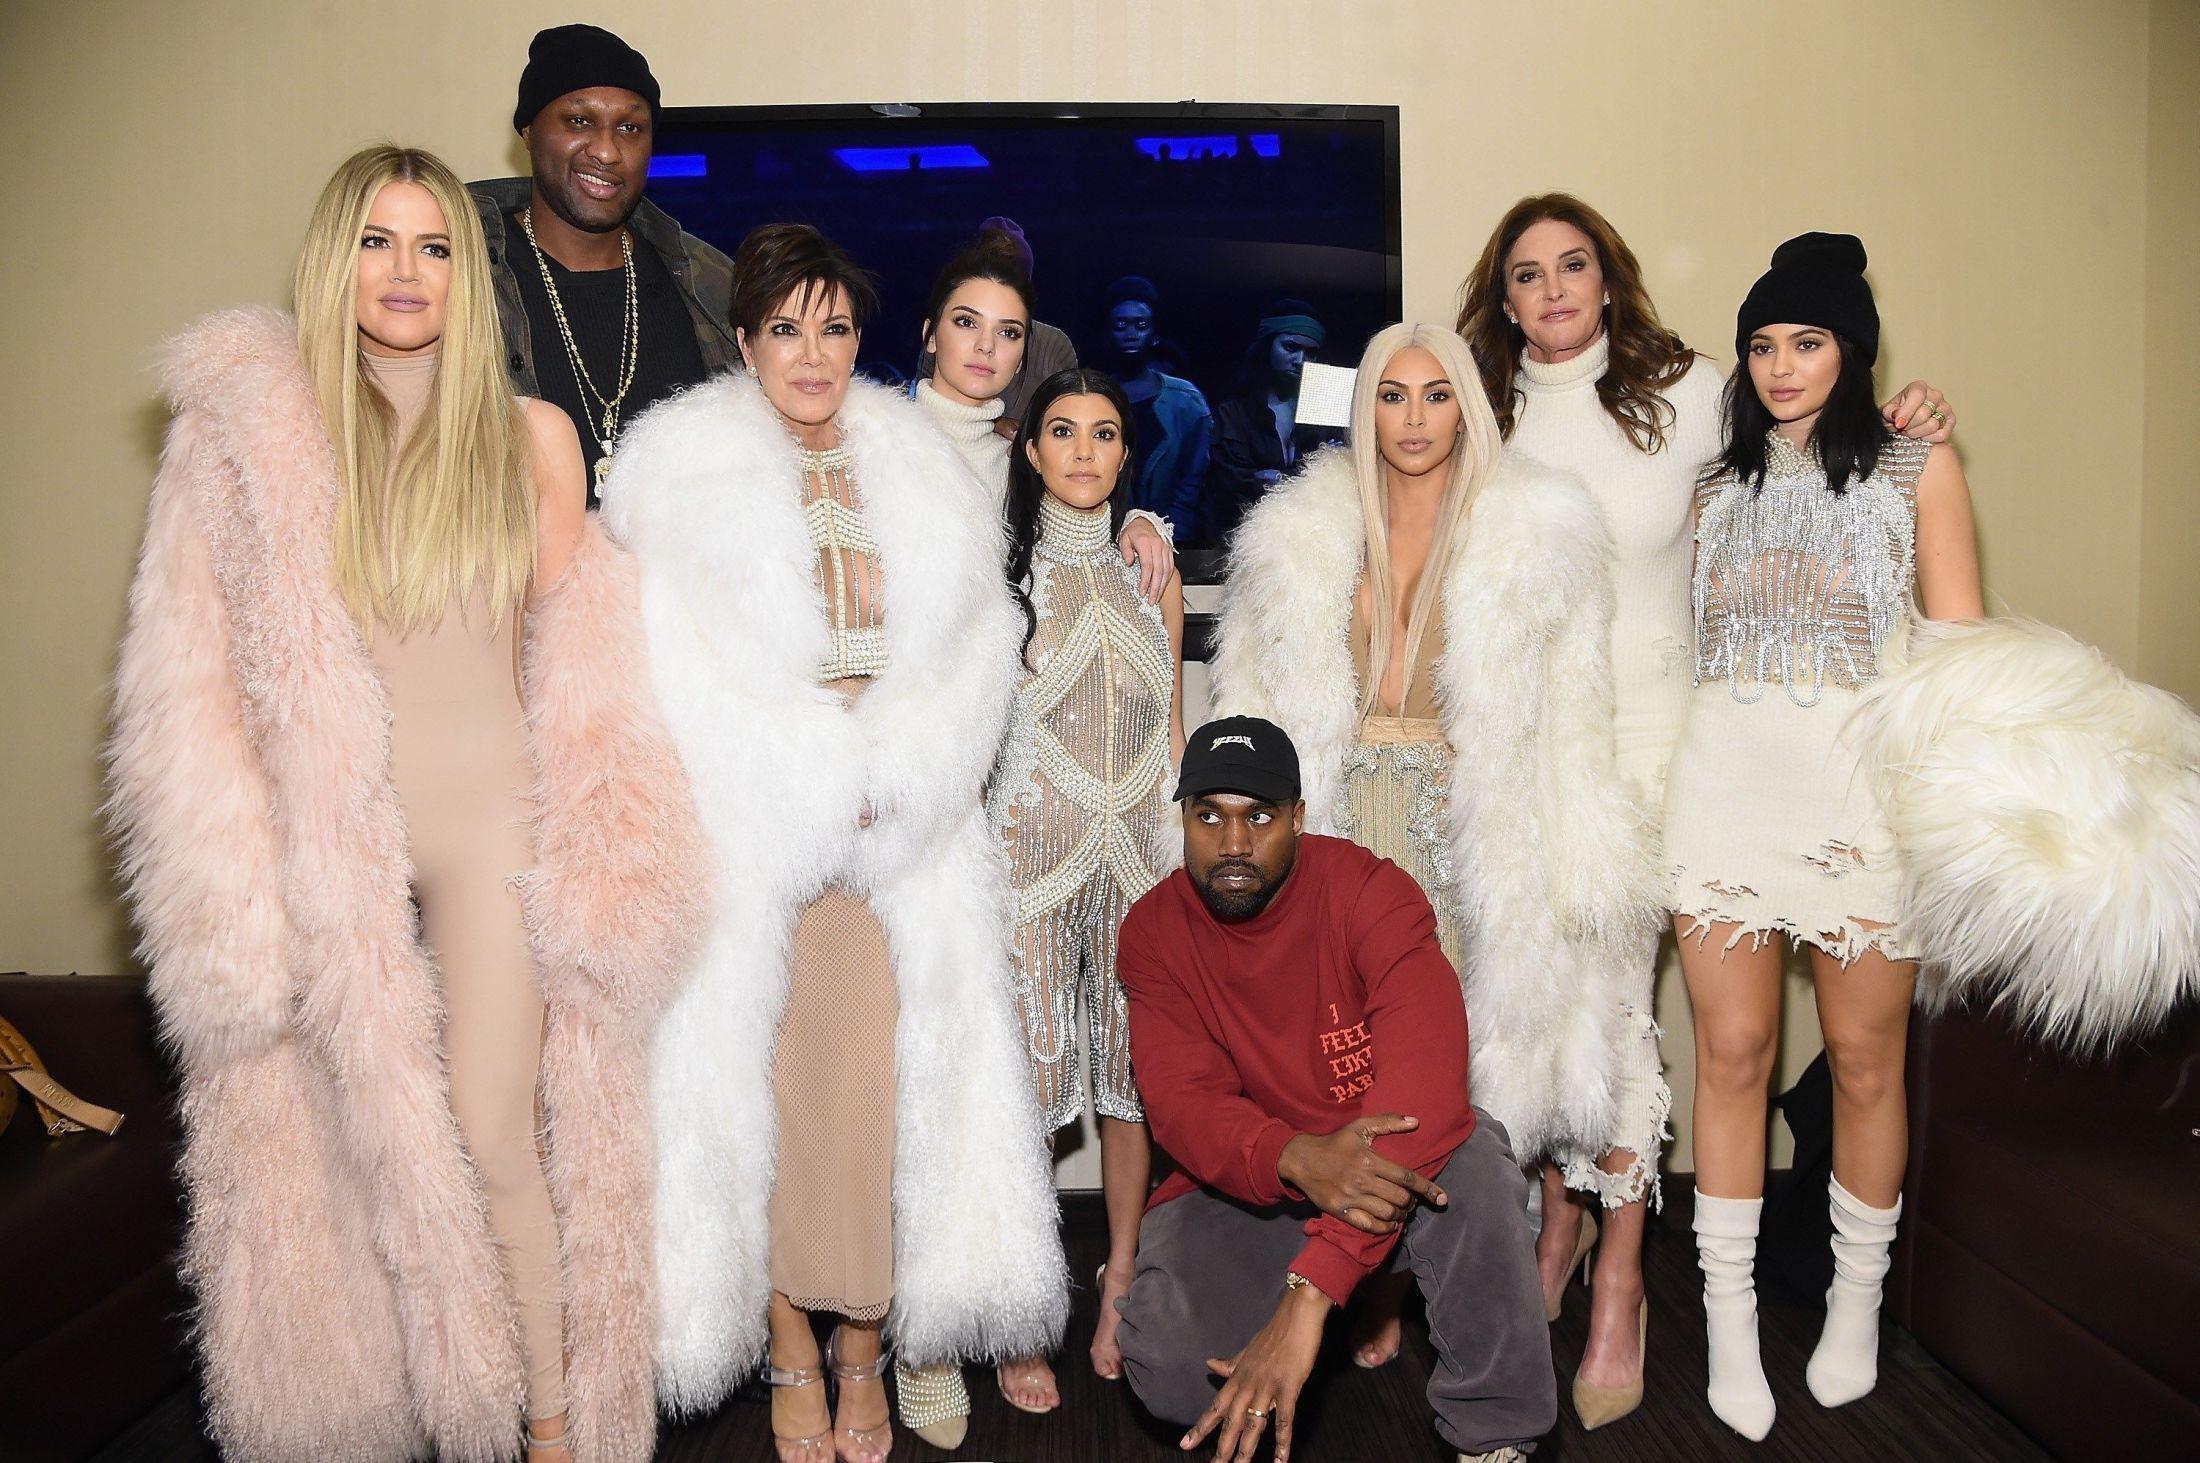 HELE KLANEN: Familien til Kim Kardashian var på moteshowet til Kanye West i New York i 2016. Mens han har på egen merch fra albumet «Life of Pablo» var resten av klanen kledd opp i Balmain. Foto: AFP